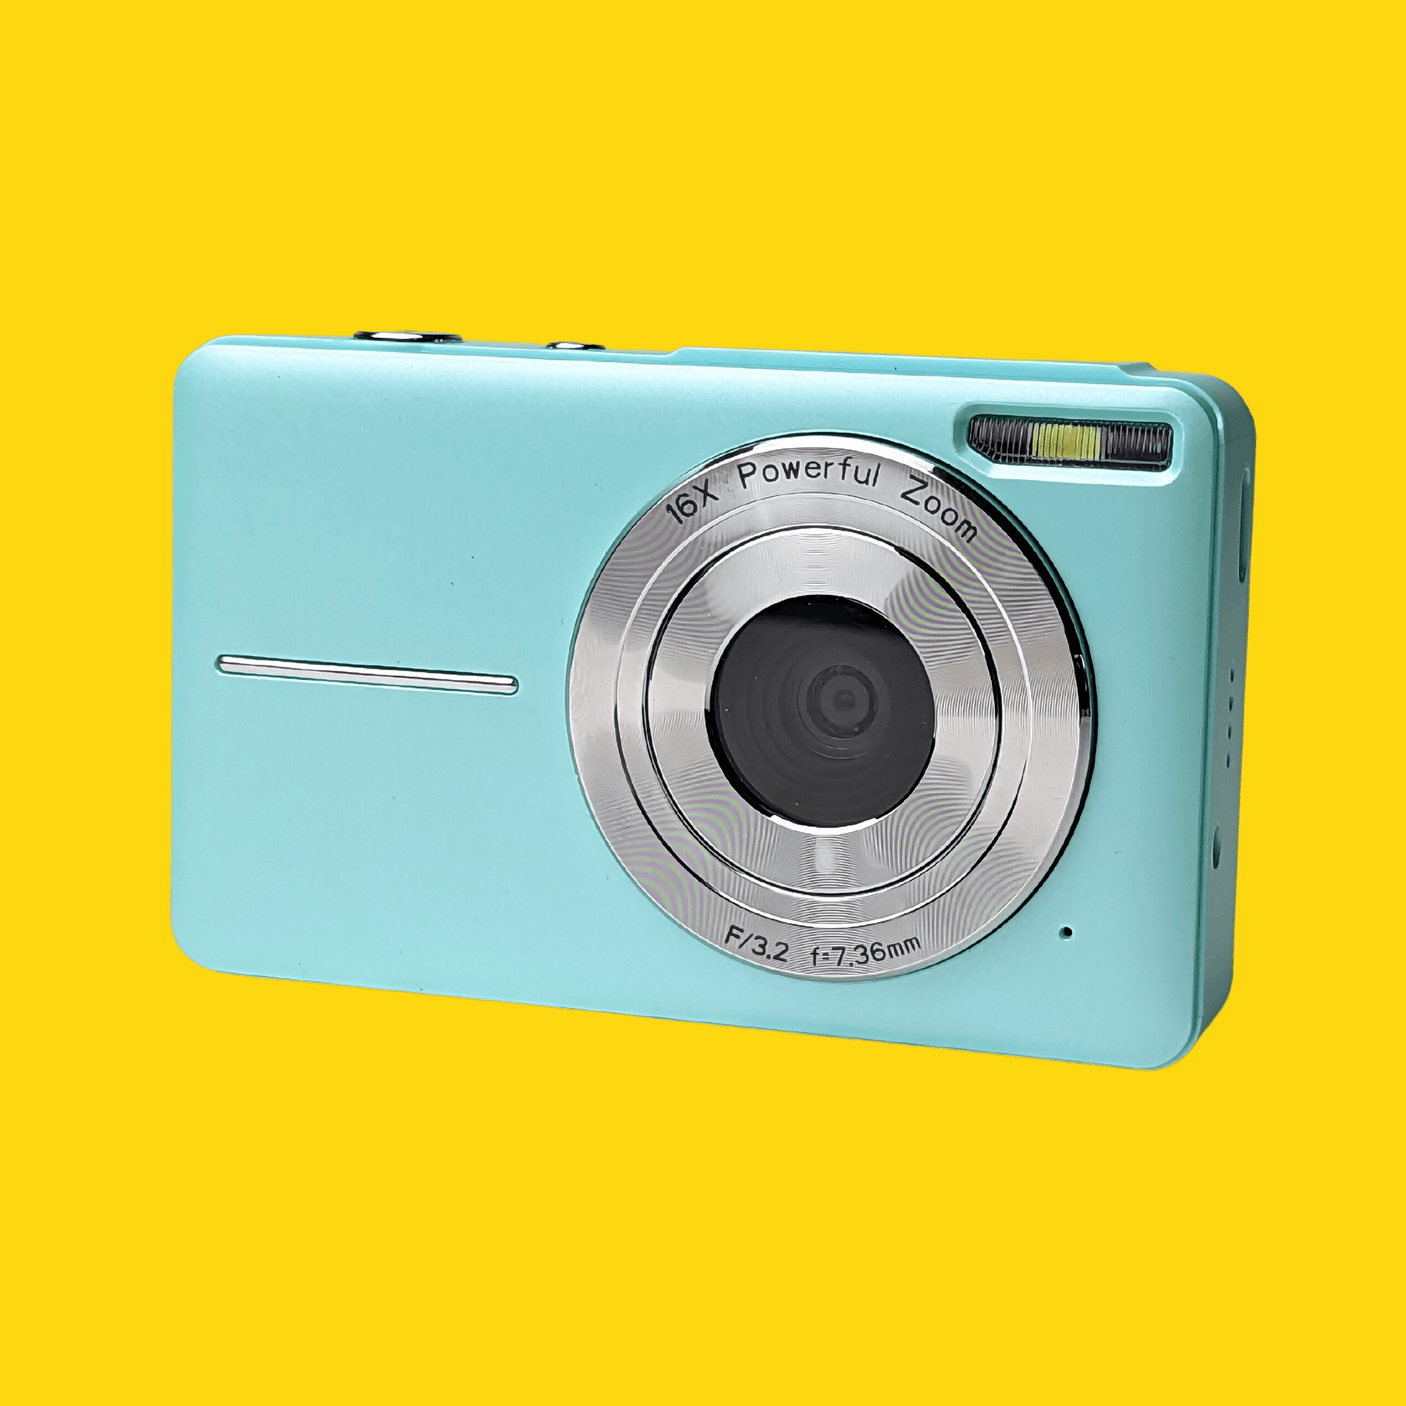 Retro Turquoise Compact Digital Camera - Digicam